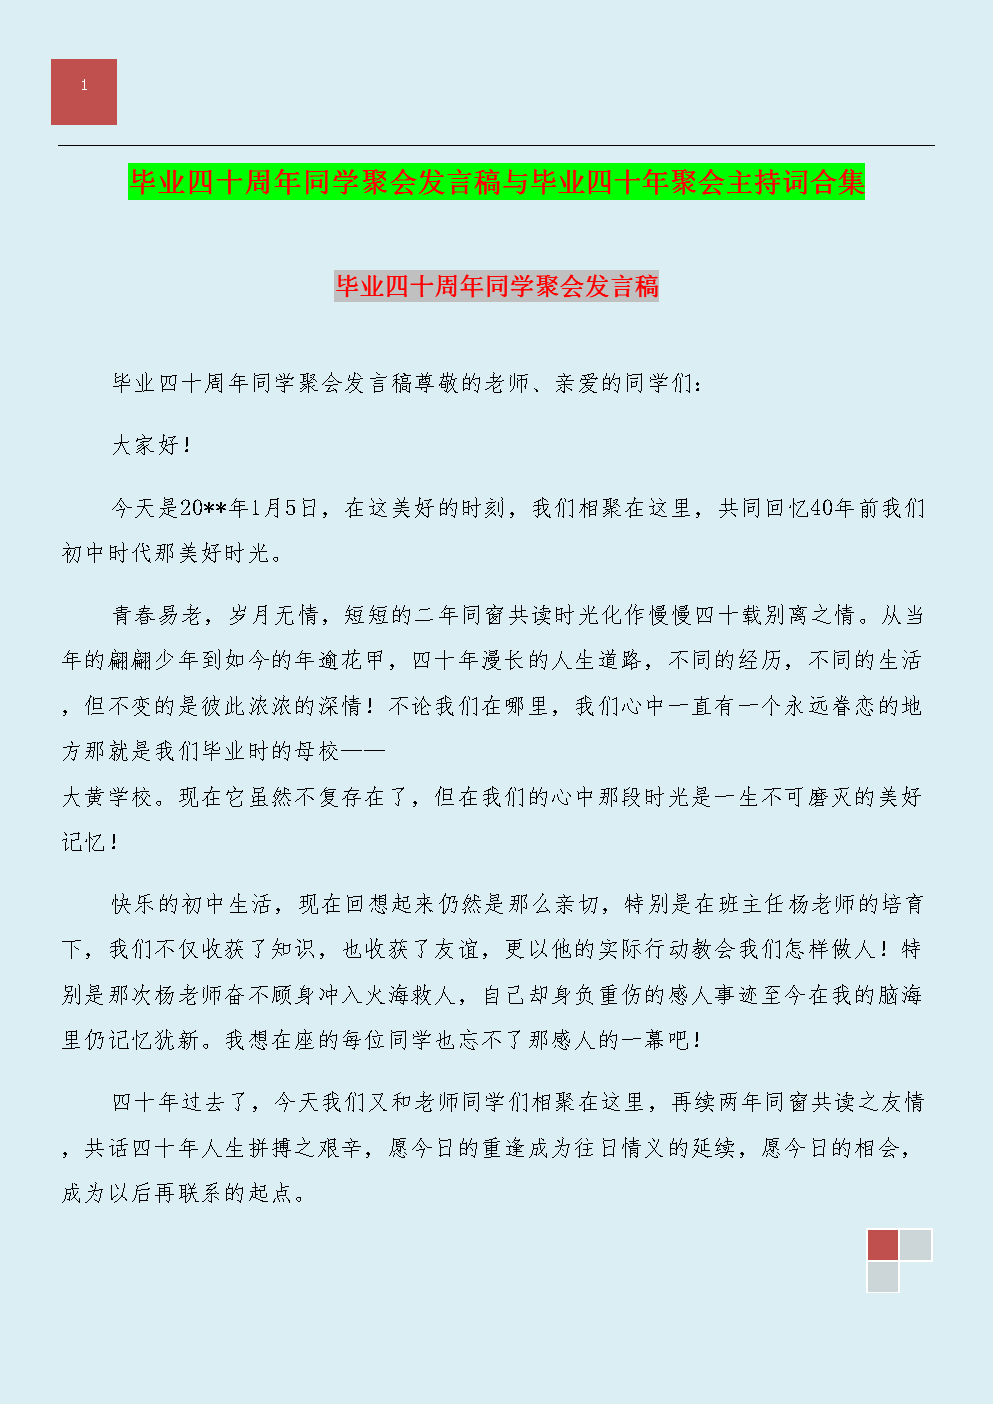 北京大学毕业典礼的演讲稿引起了共鸣并反映出最多